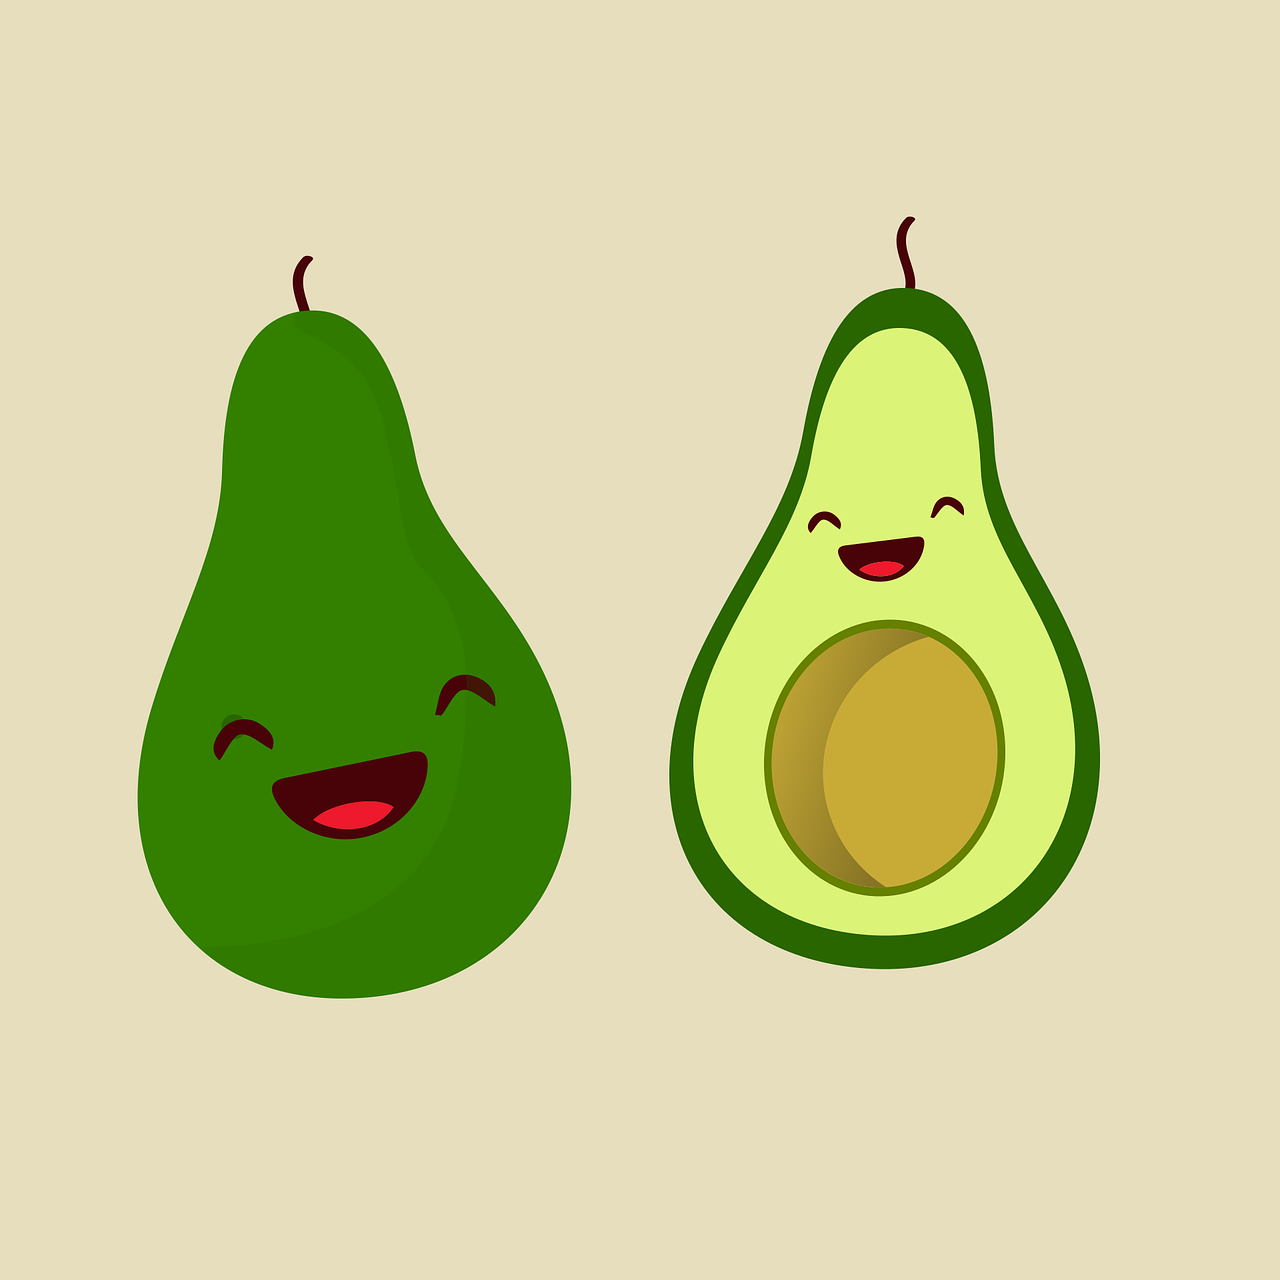 Brutte notizie per gli amanti dell’avocado